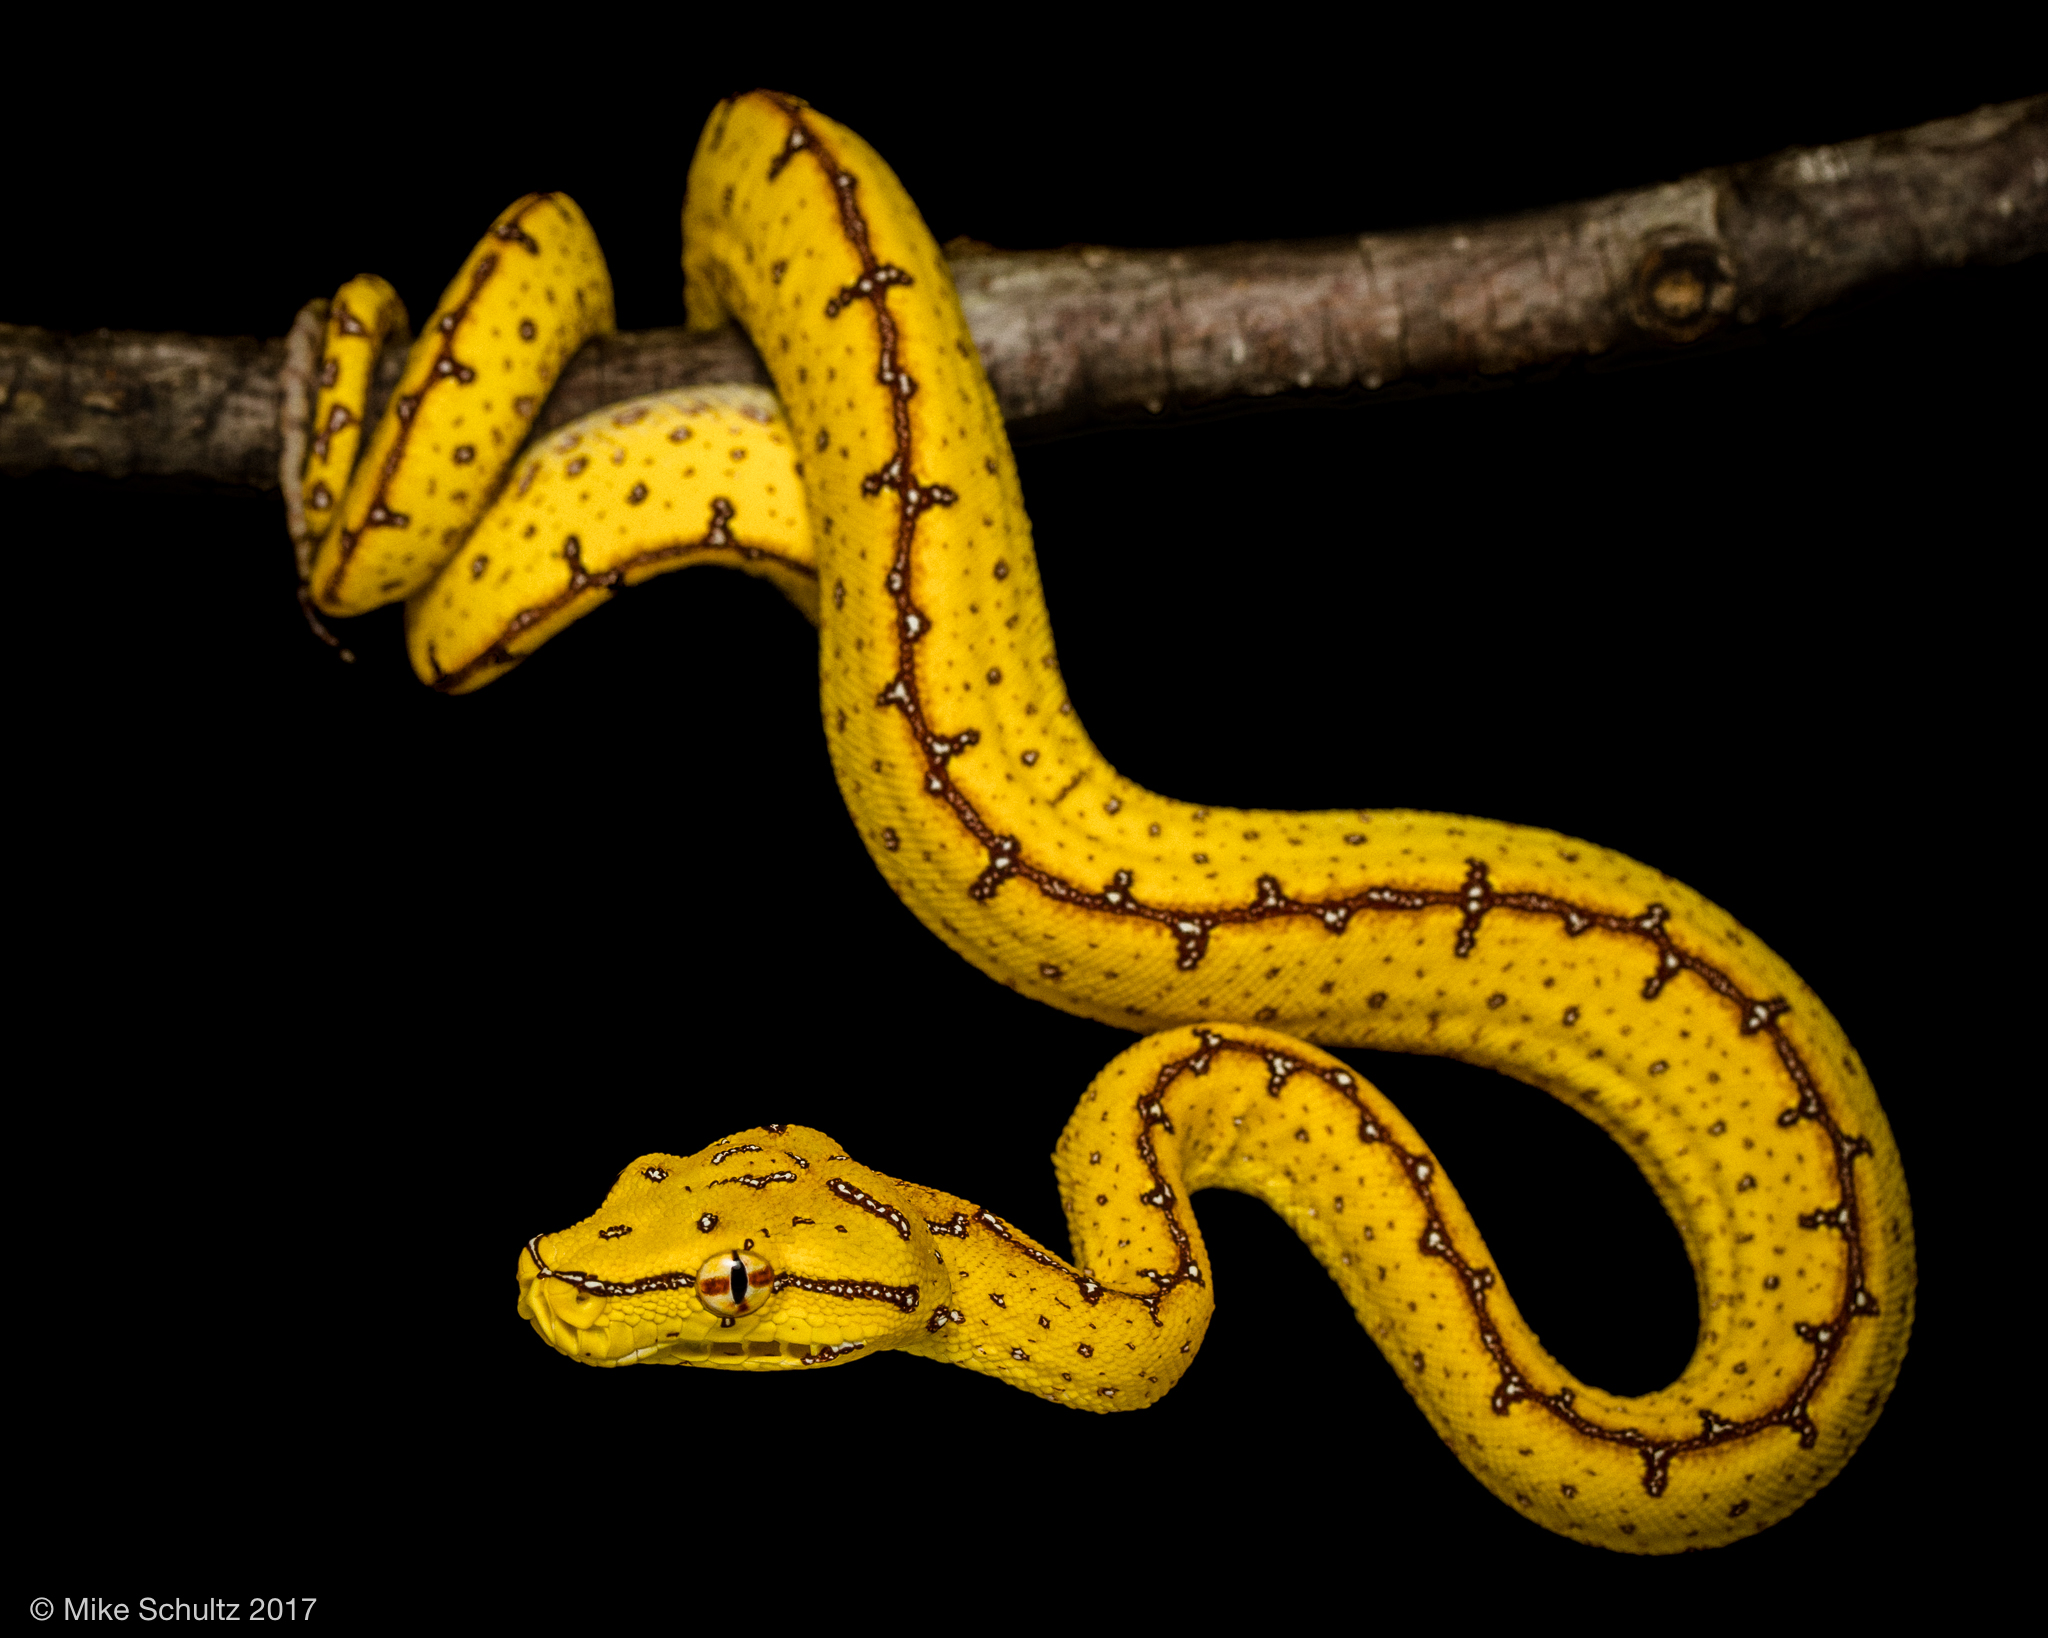 Cyclops Green Tree Python for sale - Morelia viridis